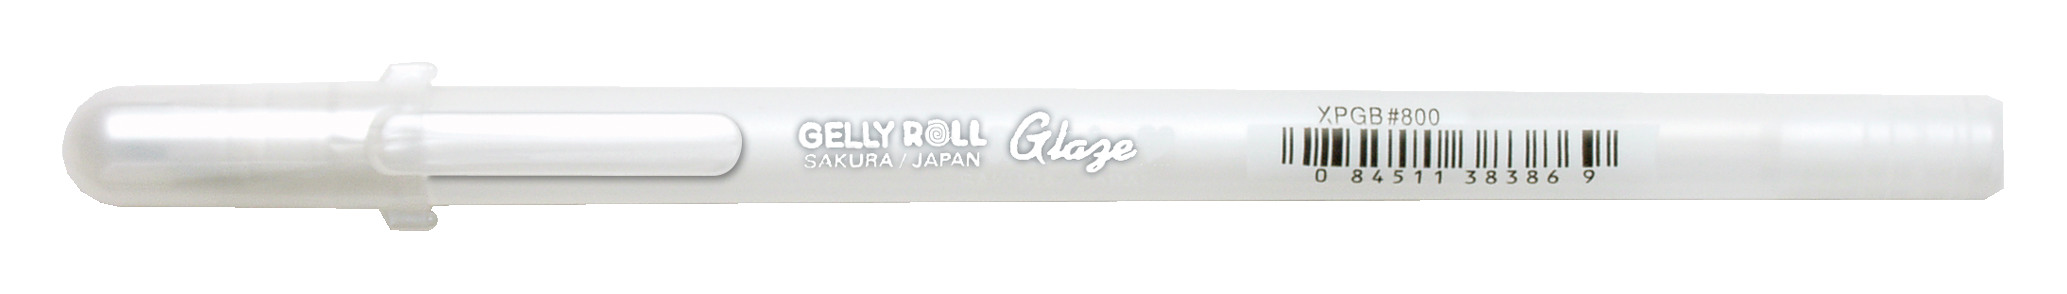 SAKURA Gelly Roll 0.7mm XPGB800 Glaze Clear